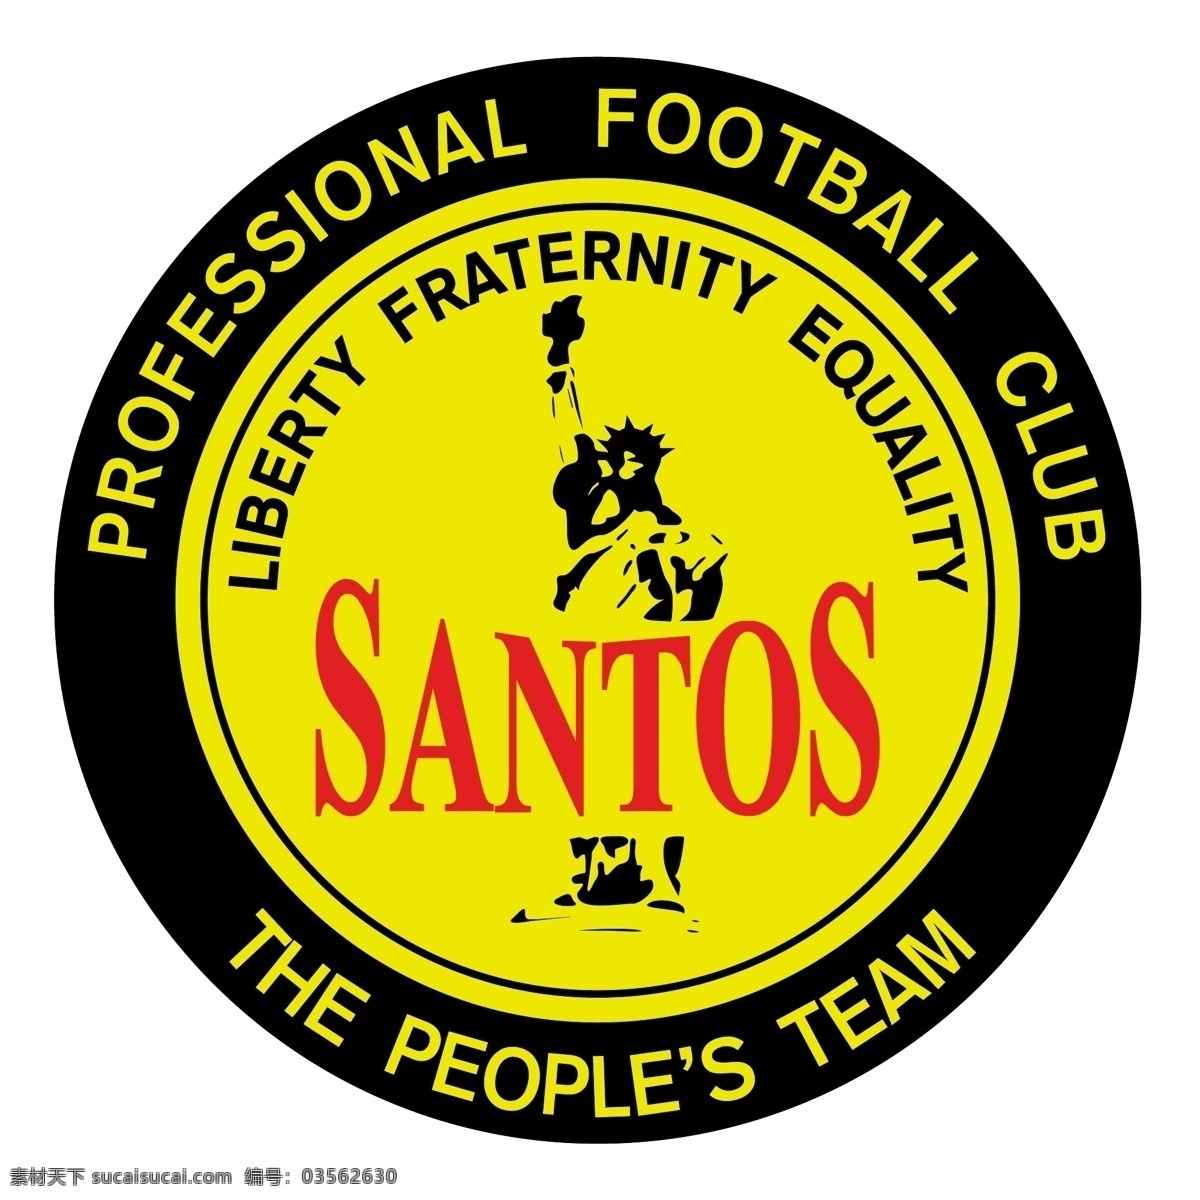 桑托斯0 标志 桑托斯 山度士 杜 蒙特 向量 足球 俱乐部 体育俱乐部 萨尔瓦 多巴 矢量 杜蒙特 logo 桑托斯俱乐部 矢量图 建筑家居